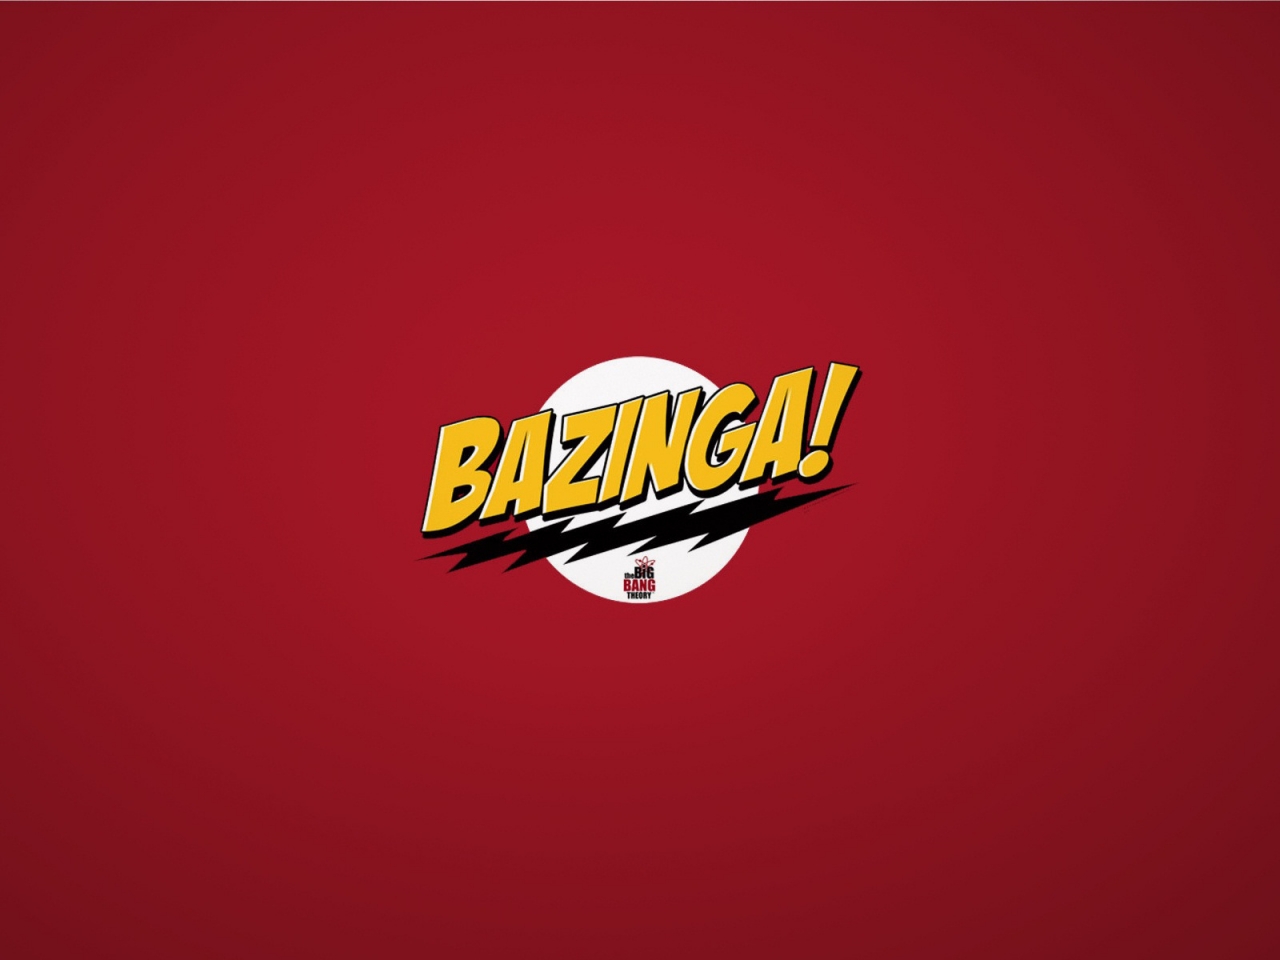 The Big Bang Theory Bazinga for 1280 x 960 resolution